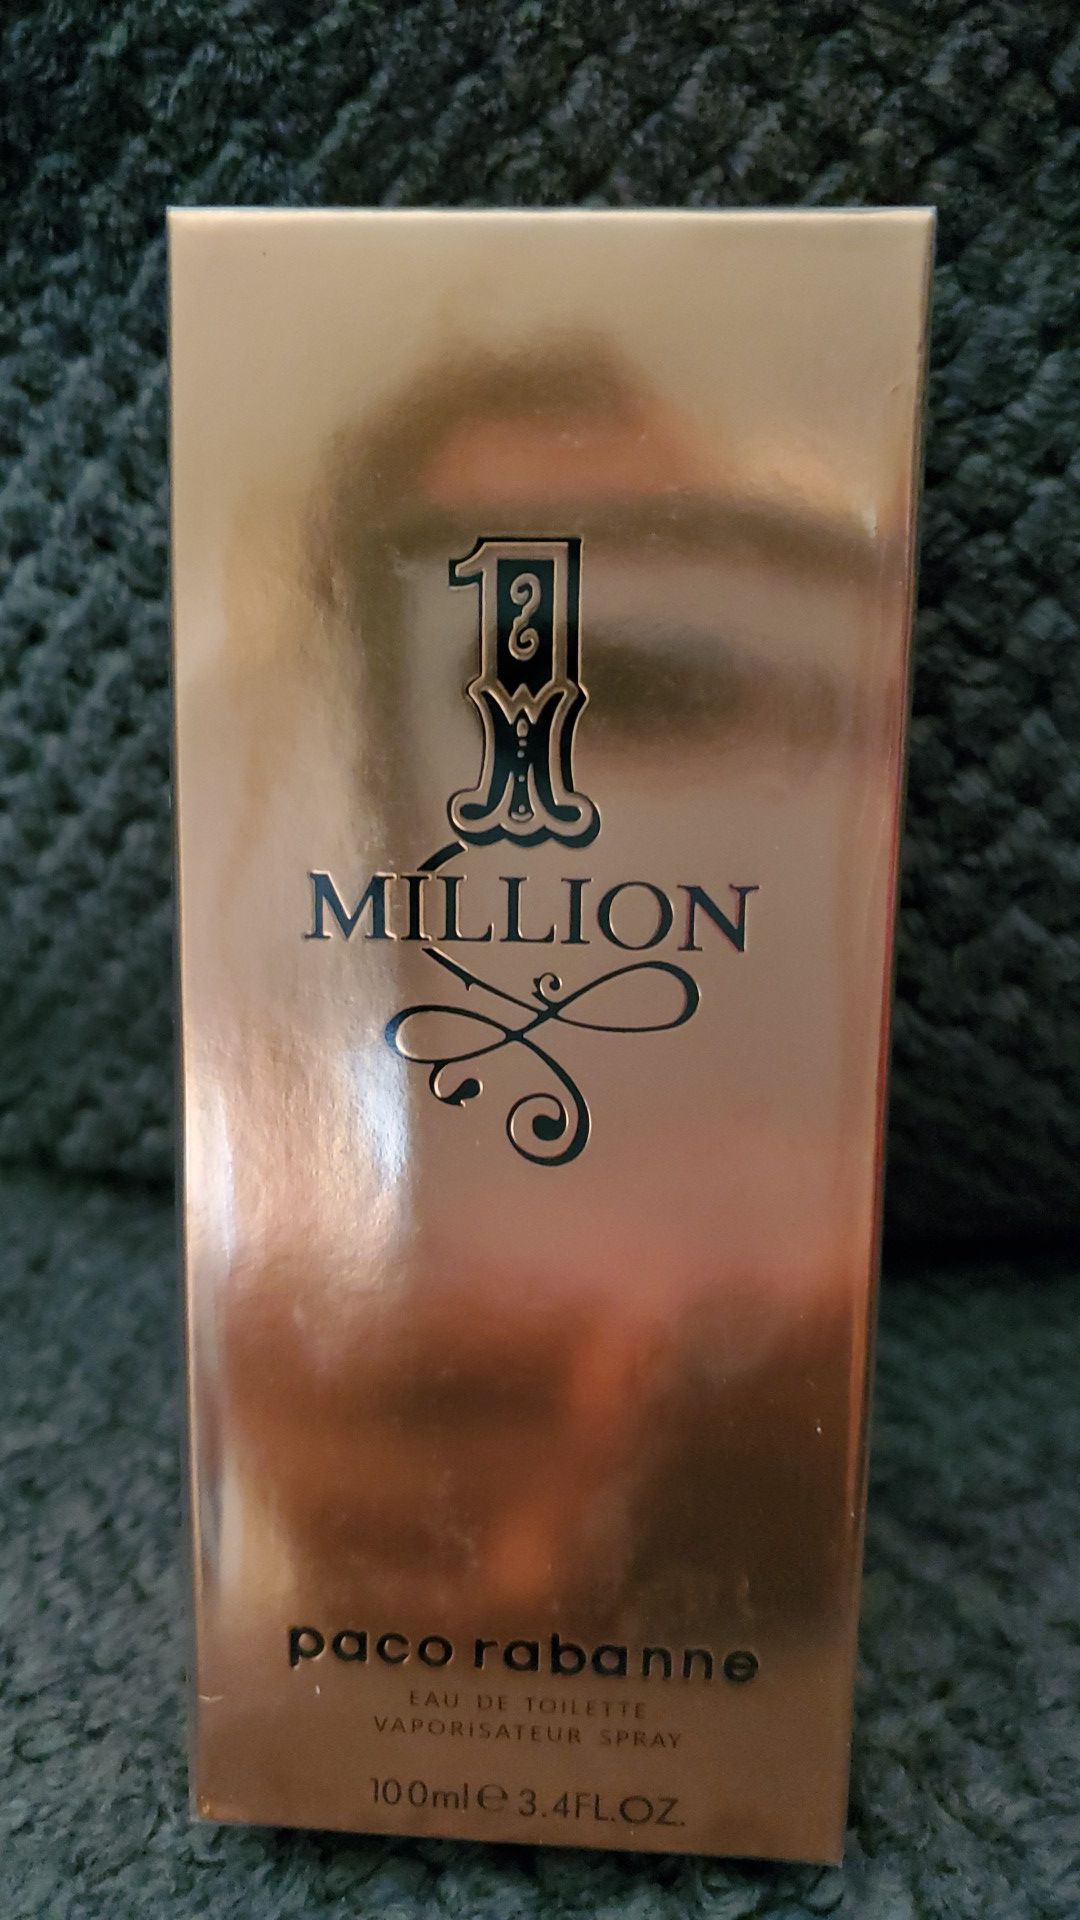 1million perfume 3.4oz